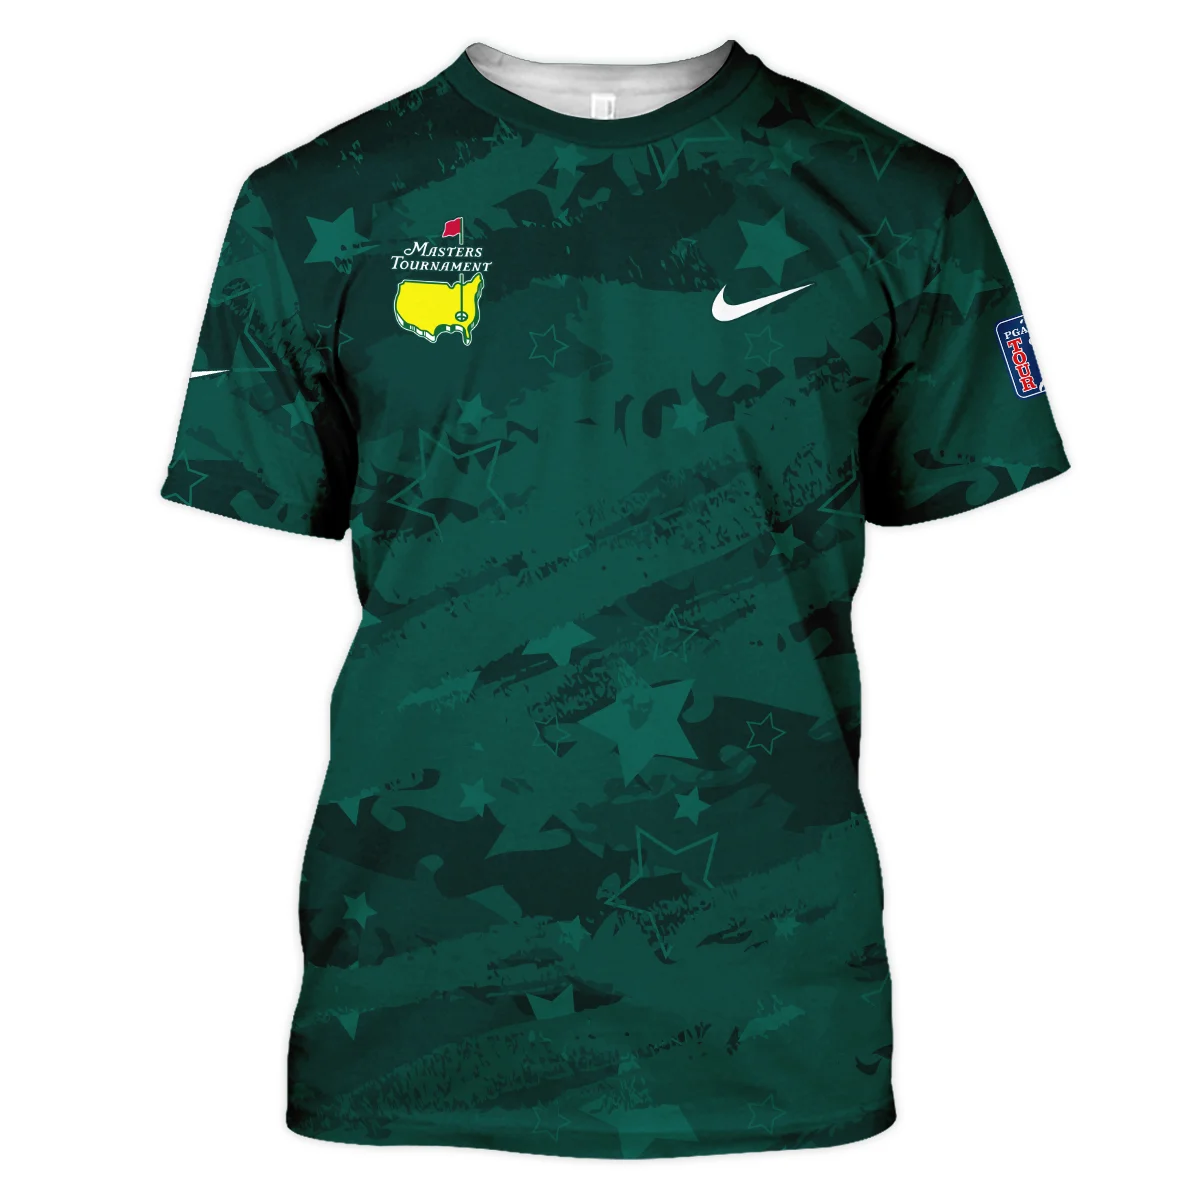 Dark Green Stars Pattern Grunge Background Masters Tournament Nike Hoodie Shirt Style Classic Hoodie Shirt